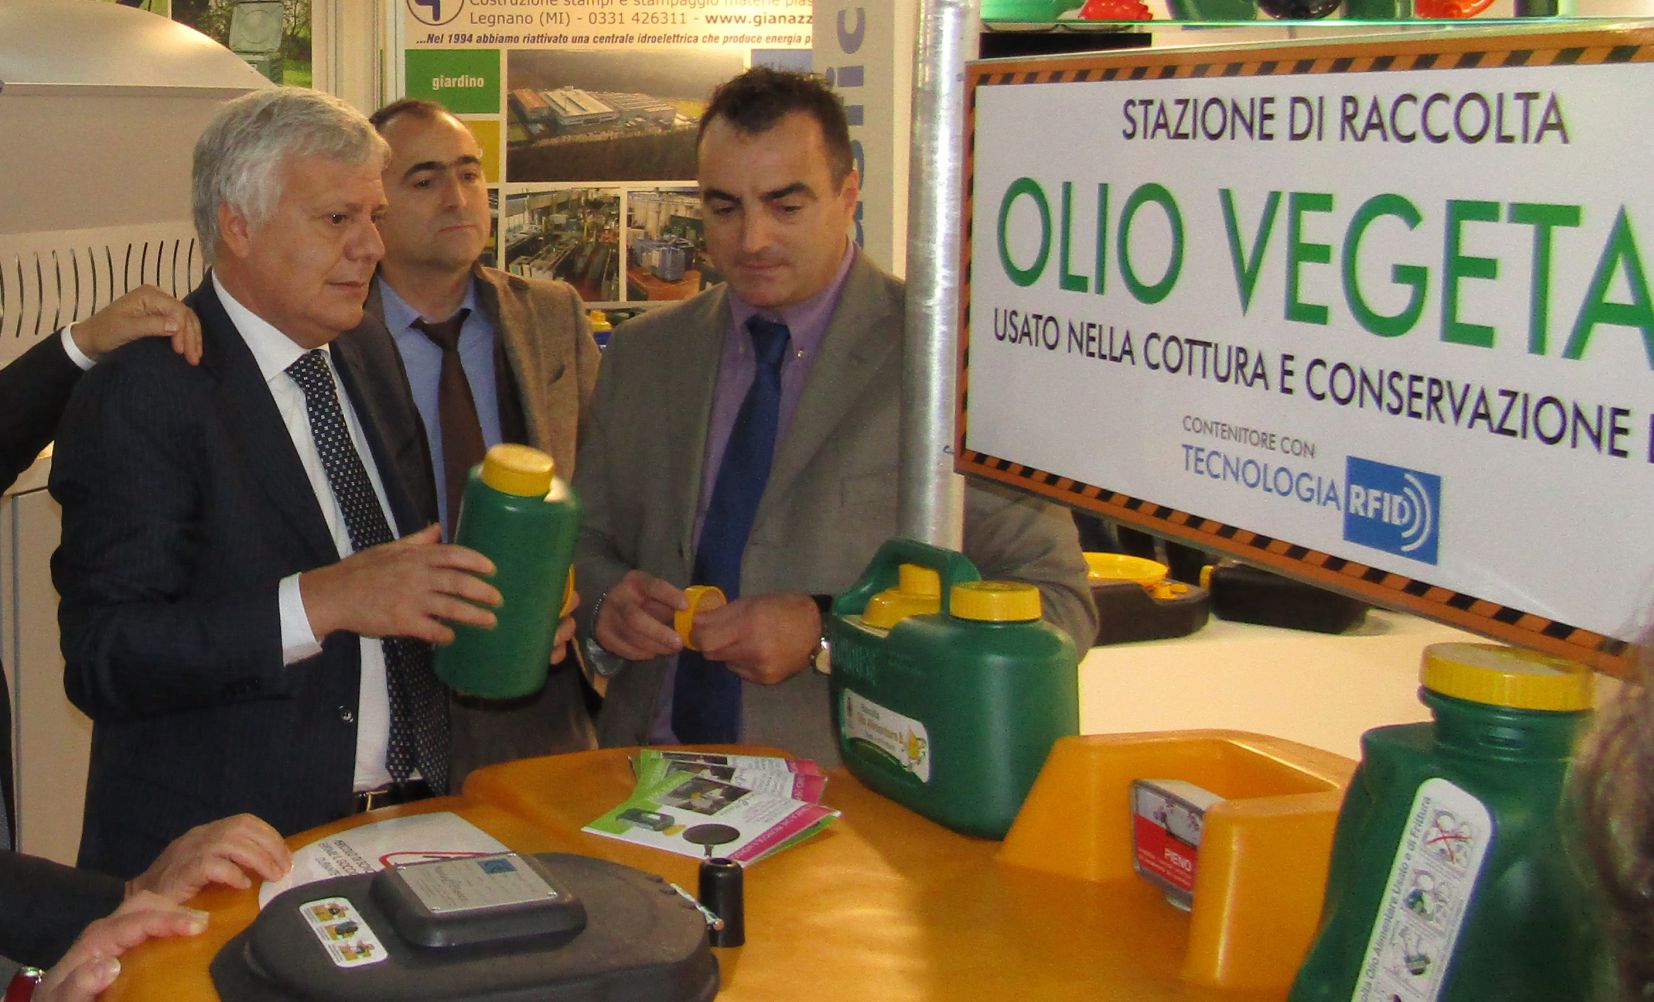 Il Ministro dell'Ambiente Gian Luca Galletti in visita allo stand Nuova C.Plastica - Ecomondo 2017